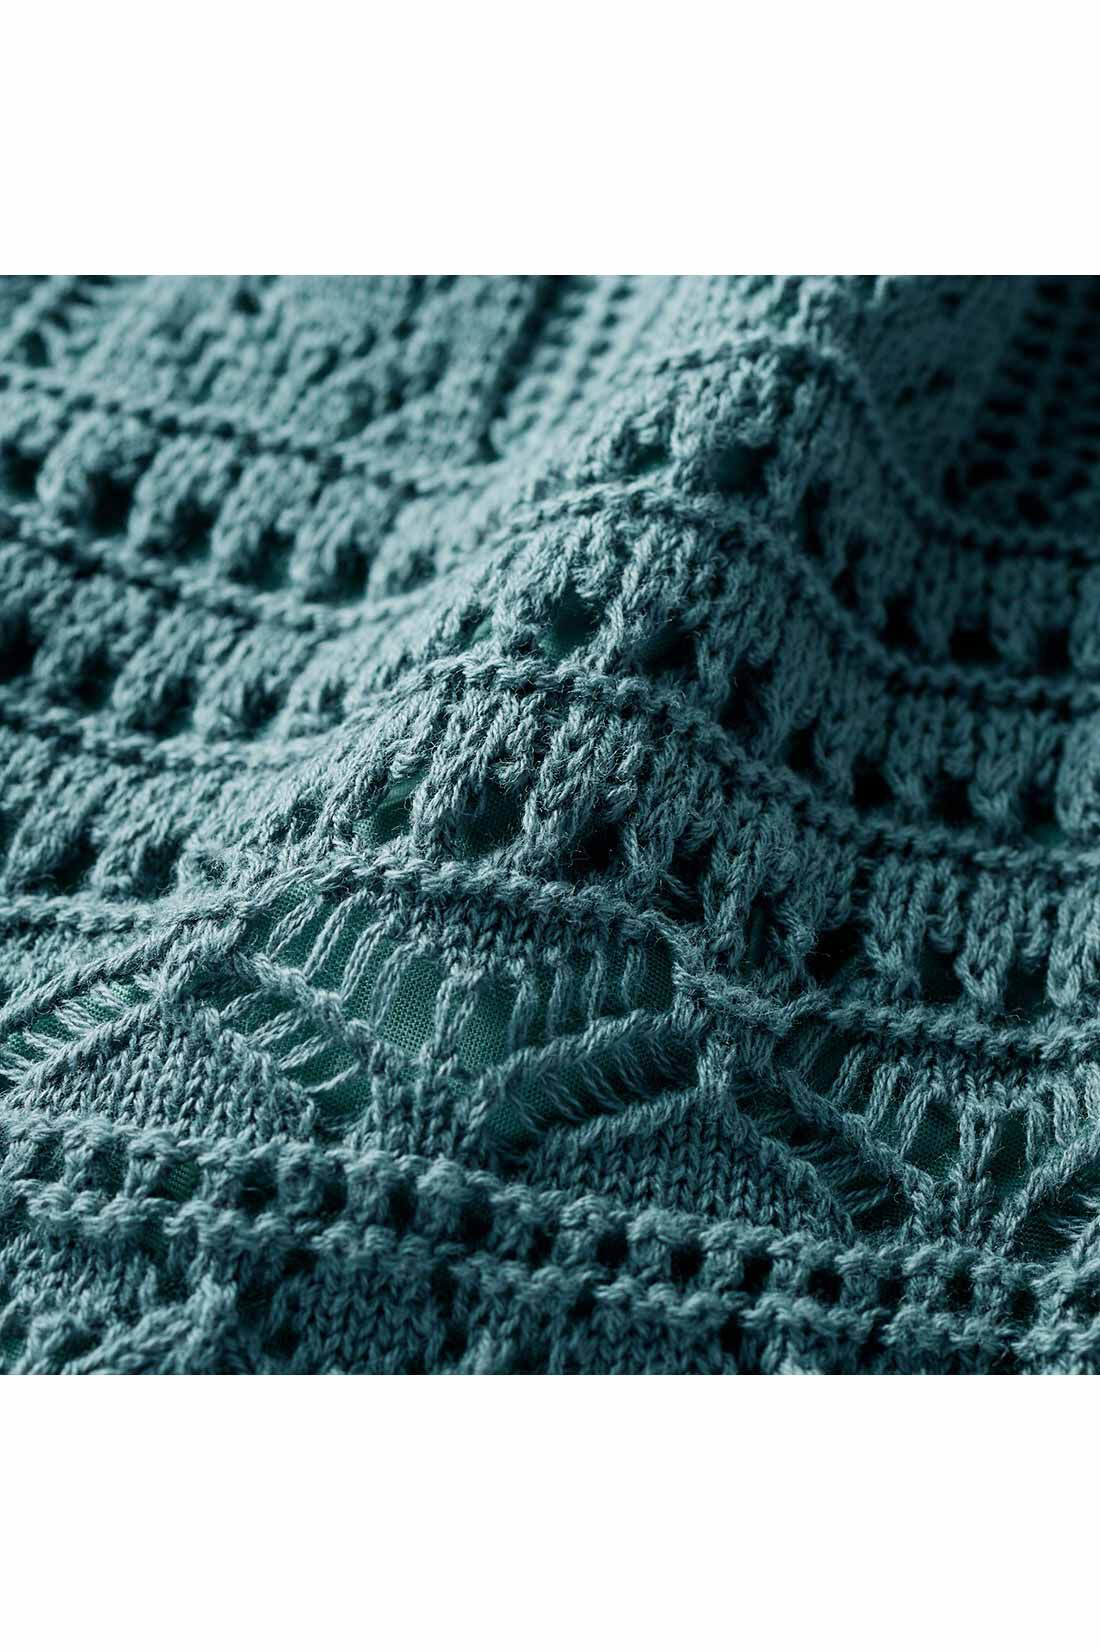 Real Stock|IEDIT[イディット]　クロシェ編み風ロングニットスカート〈グリーン〉|いくつもの編み柄を複雑に組み合わせて、クラフト感のある印象に。